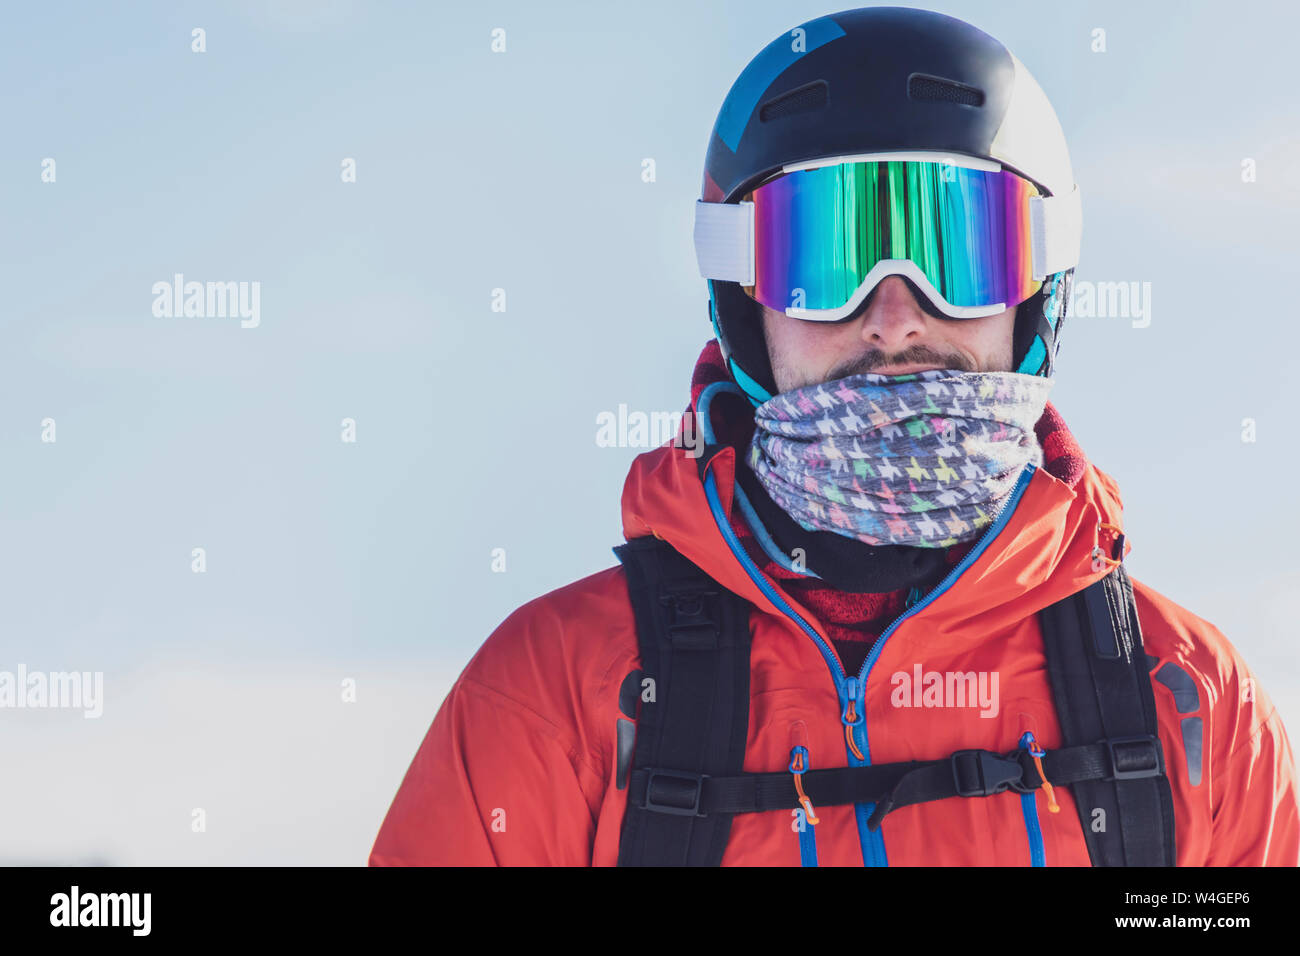 Mann mit Skibrille und Ski Helm vor hellem Hintergrund, Saalbach  Hinterglemm, Pinzgau, Österreich Stockfotografie - Alamy